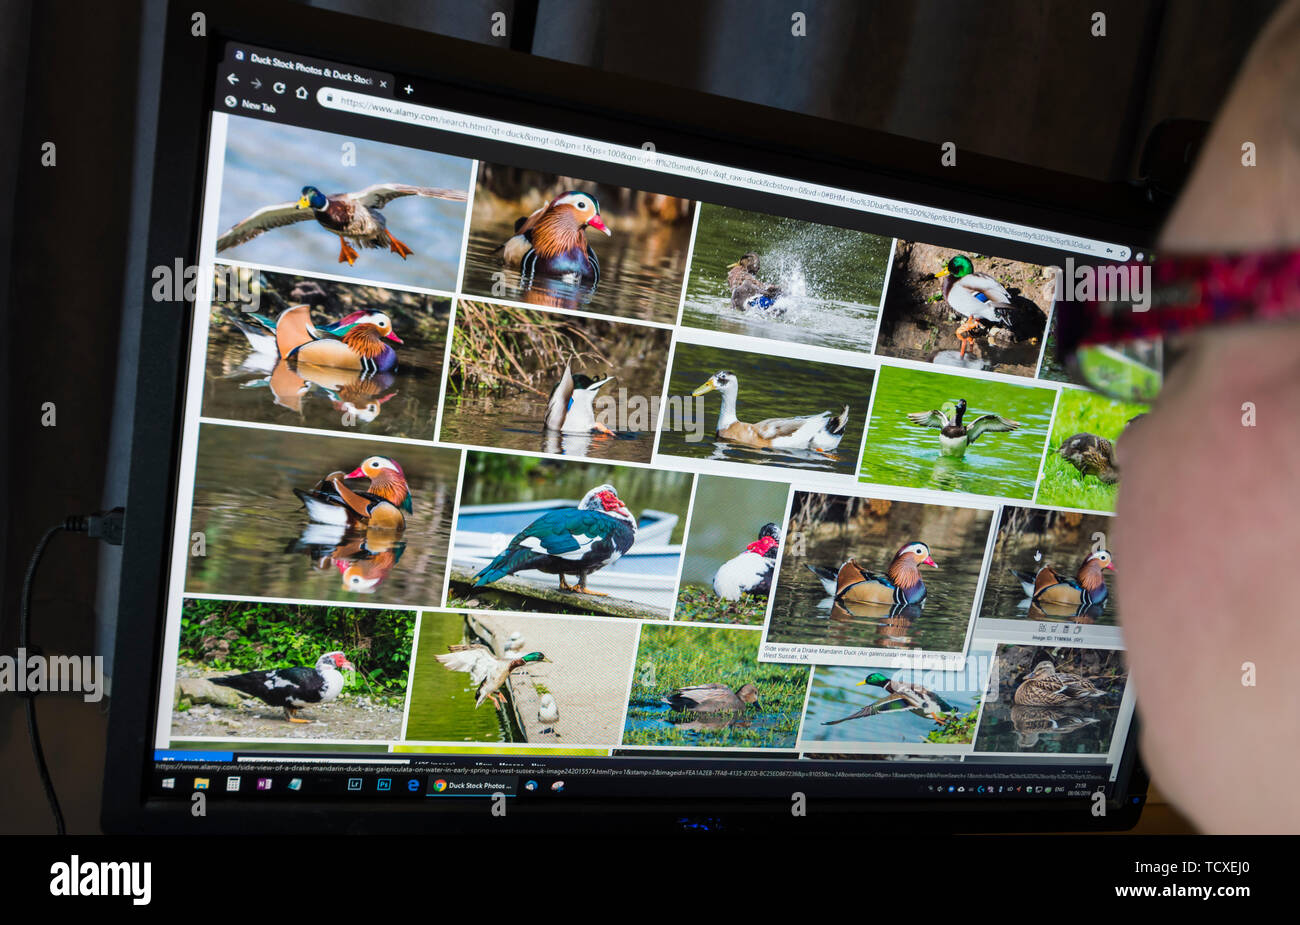 Mujer sentada en un monitor de ordenador navegando a través de la fauna de imágenes en un sitio web de fotografía de stock. Foto de stock